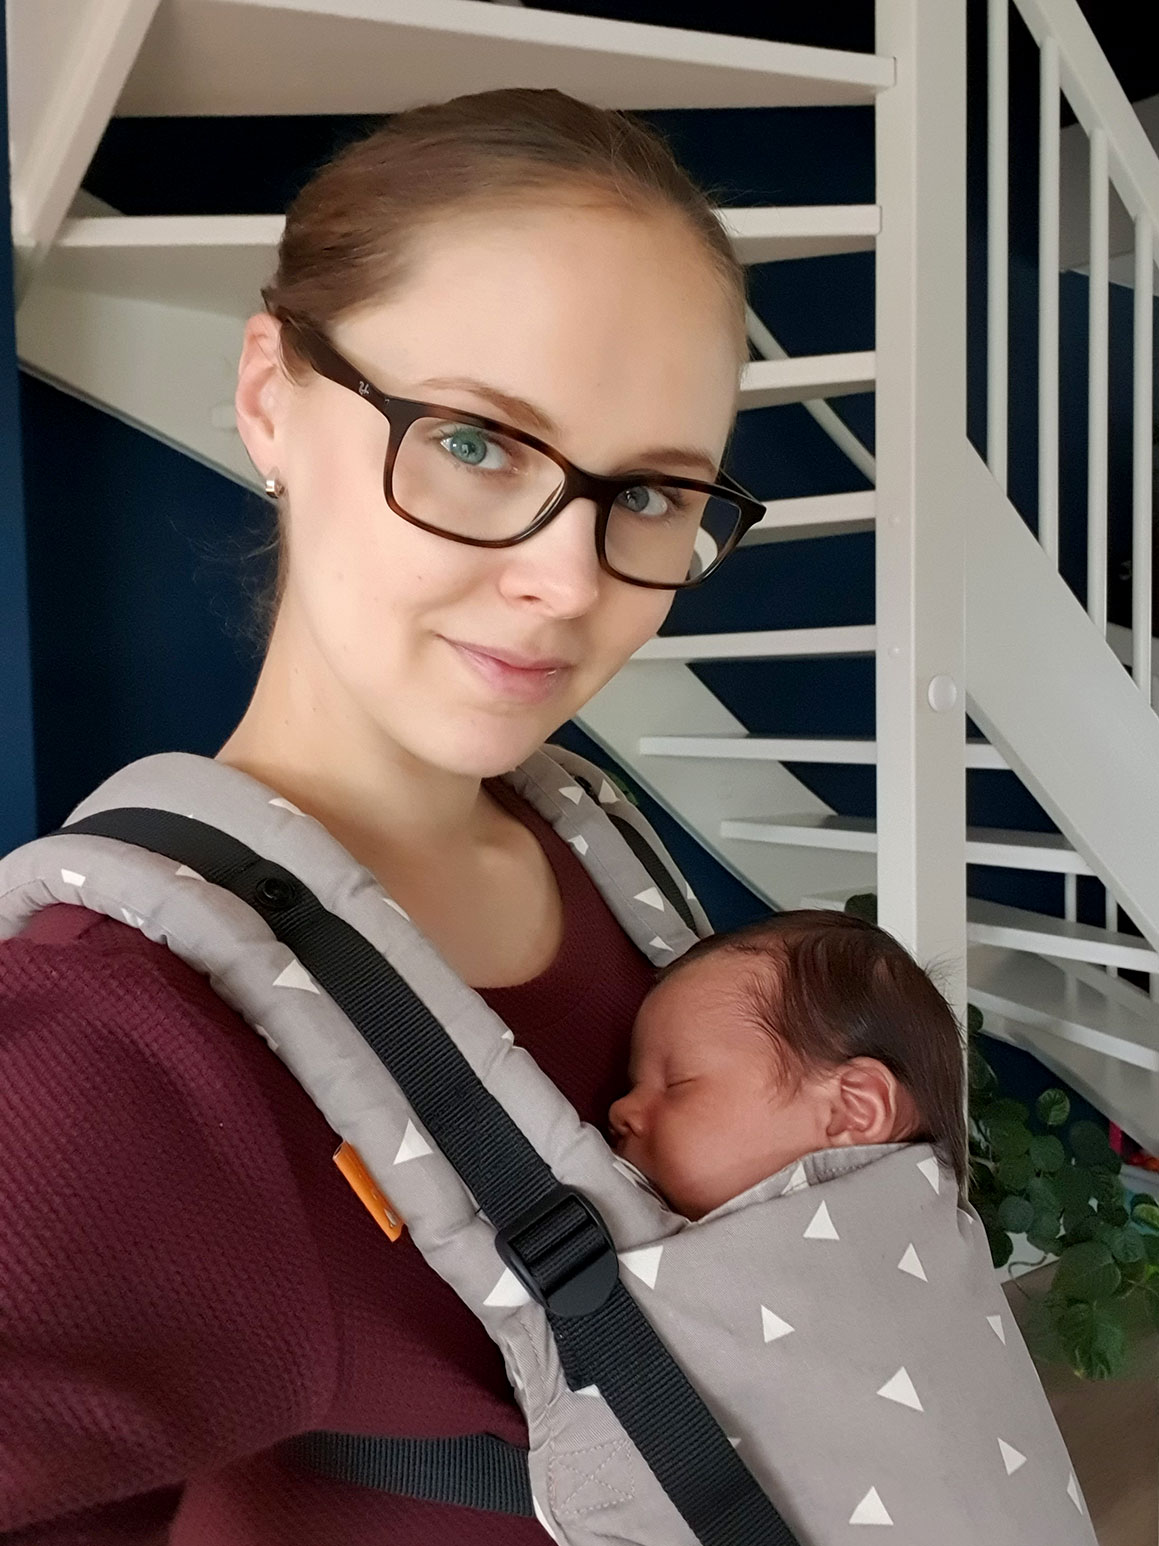 Baby update #25: Een maand oud